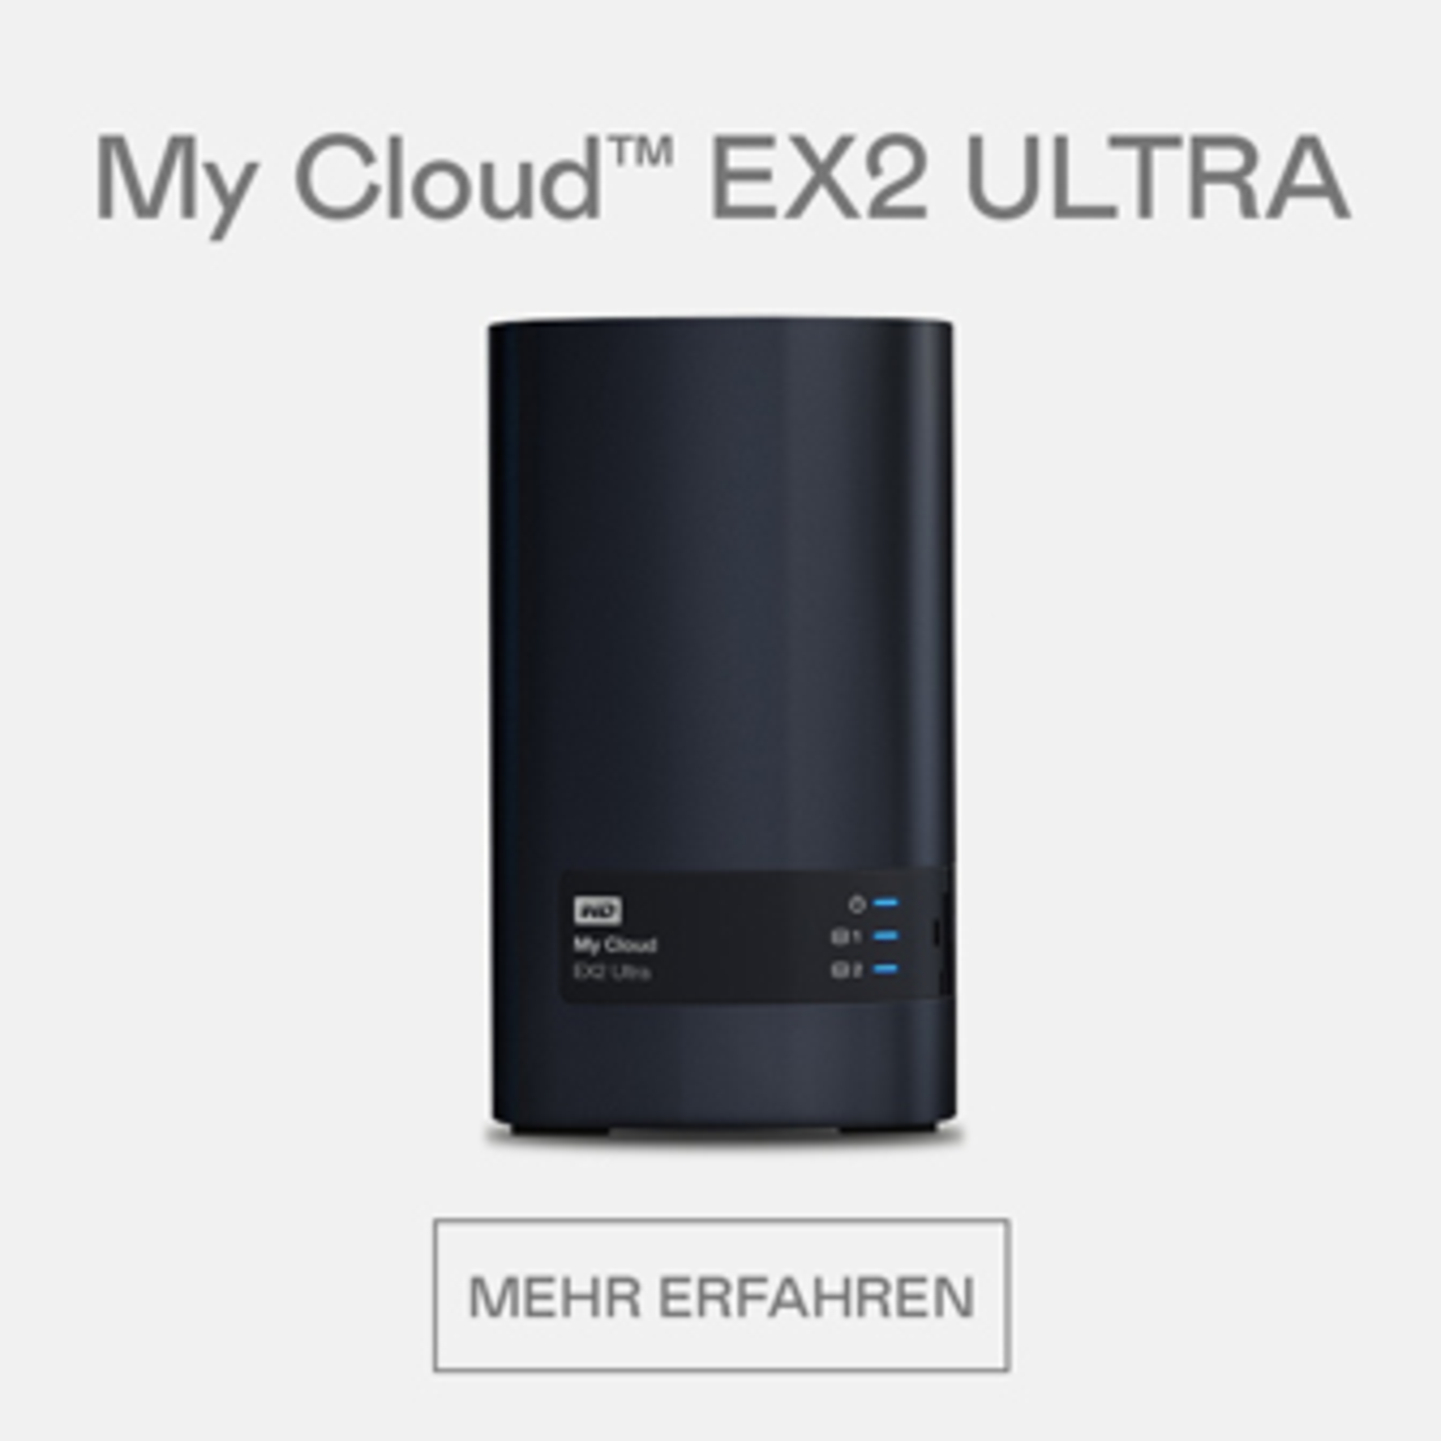 My Cloud EX2 Ultra